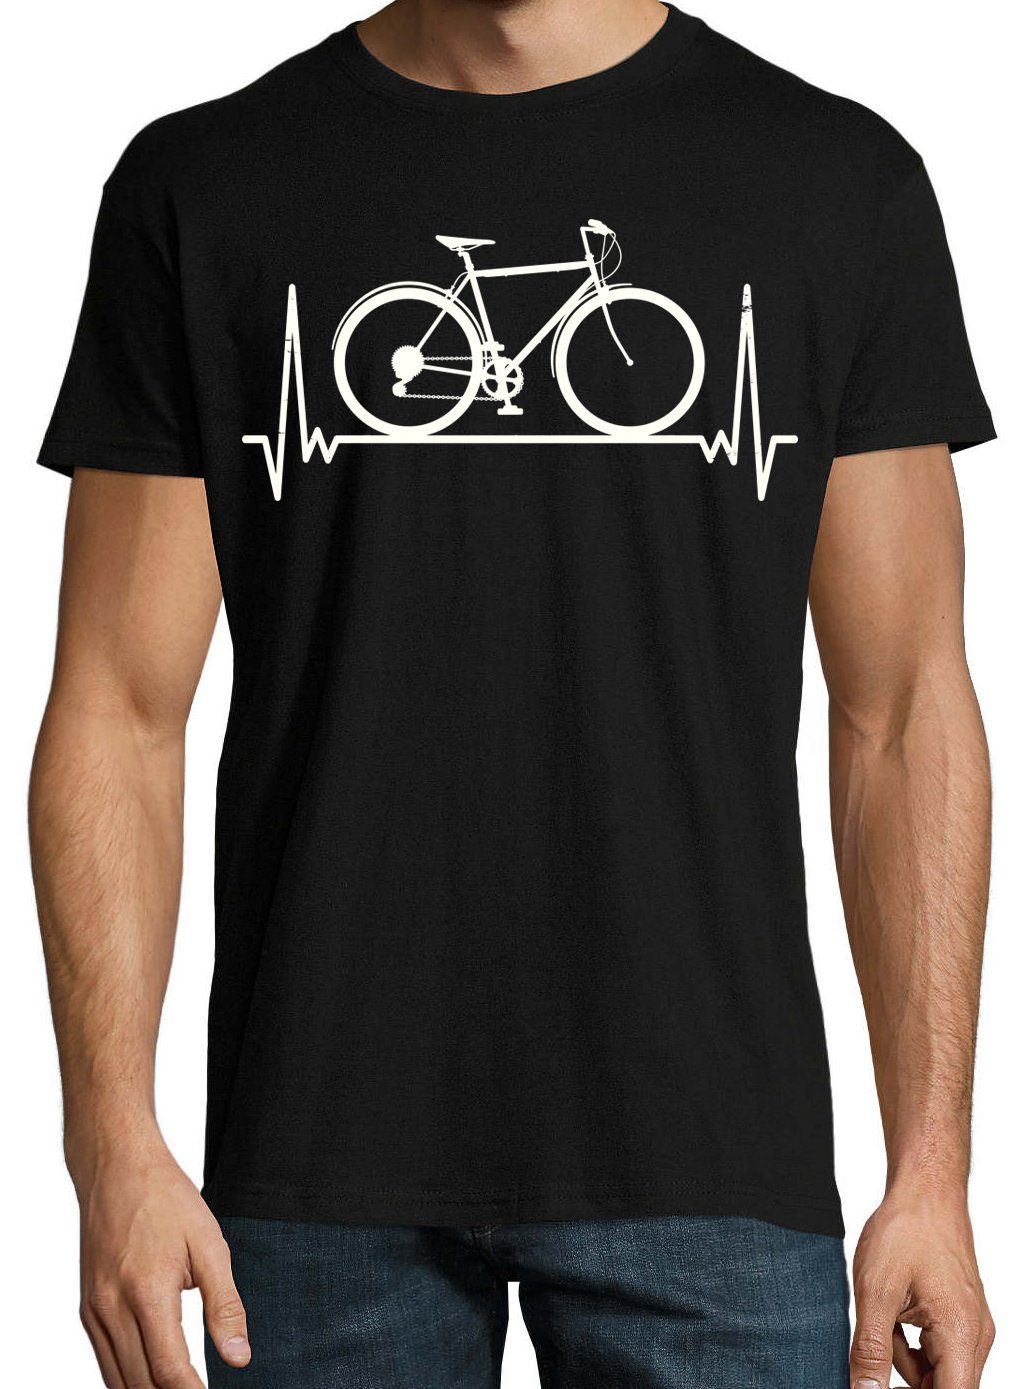 lustigem Frontprint mit T-Shirt Herren Shirt Designz Heartbeat Fahrrad Fahrrad Youth Schwarz